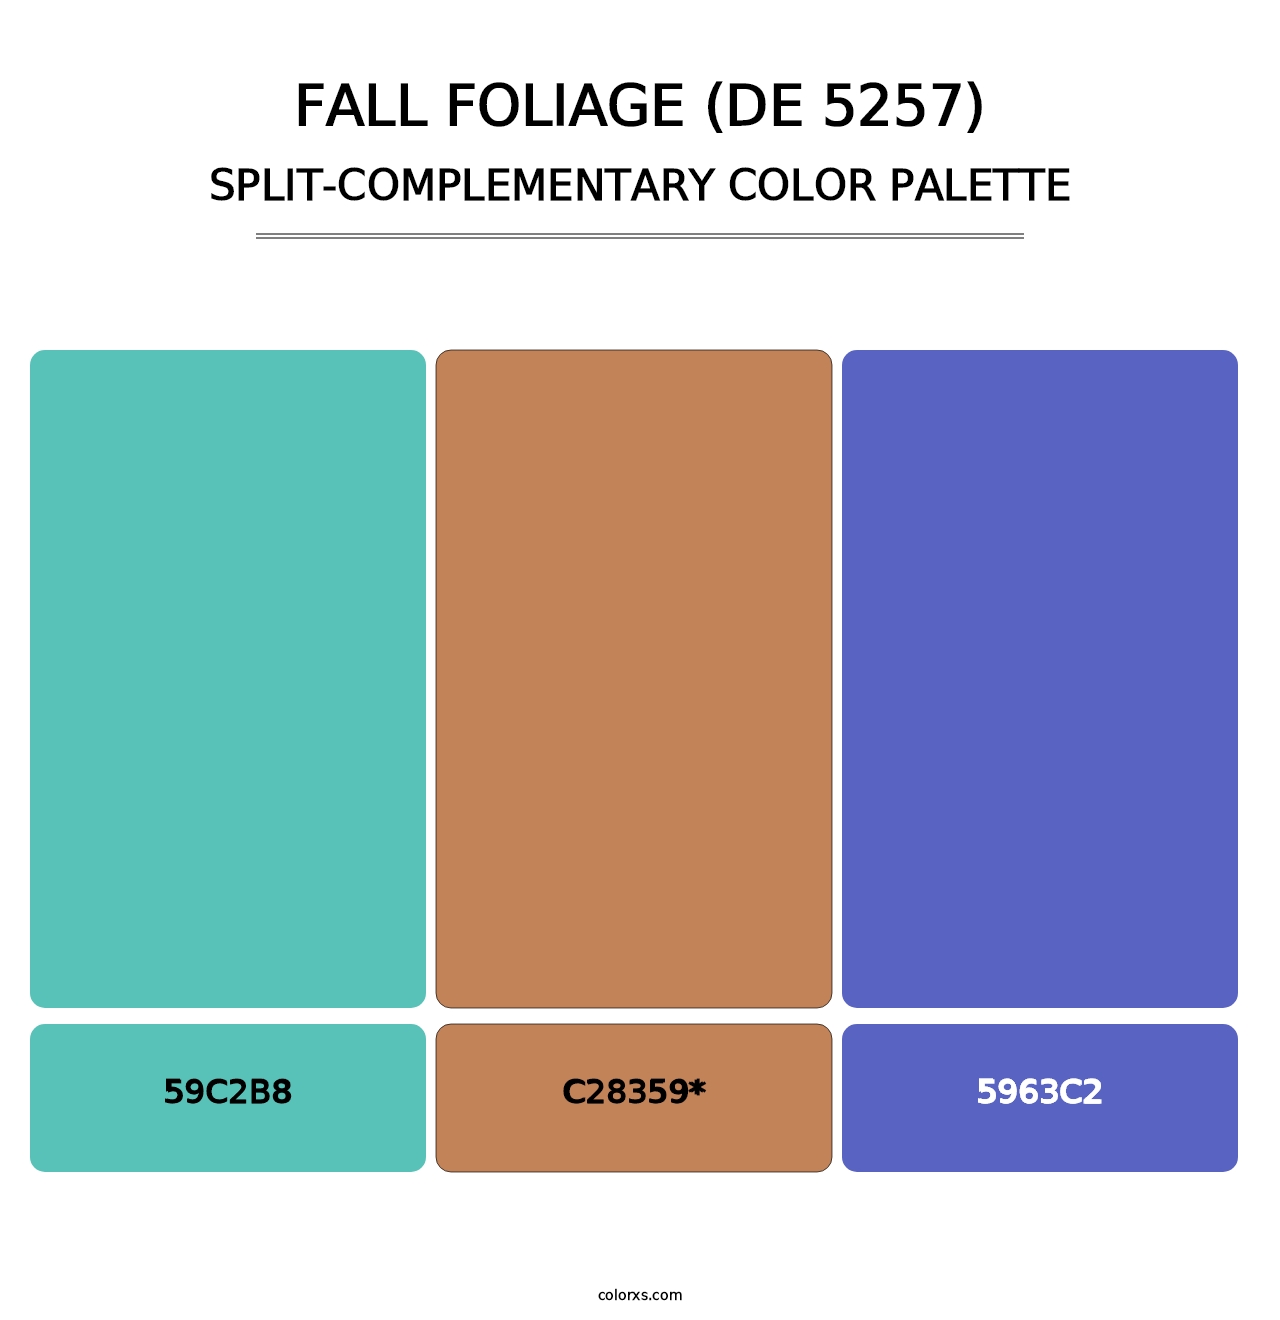 Fall Foliage (DE 5257) - Split-Complementary Color Palette